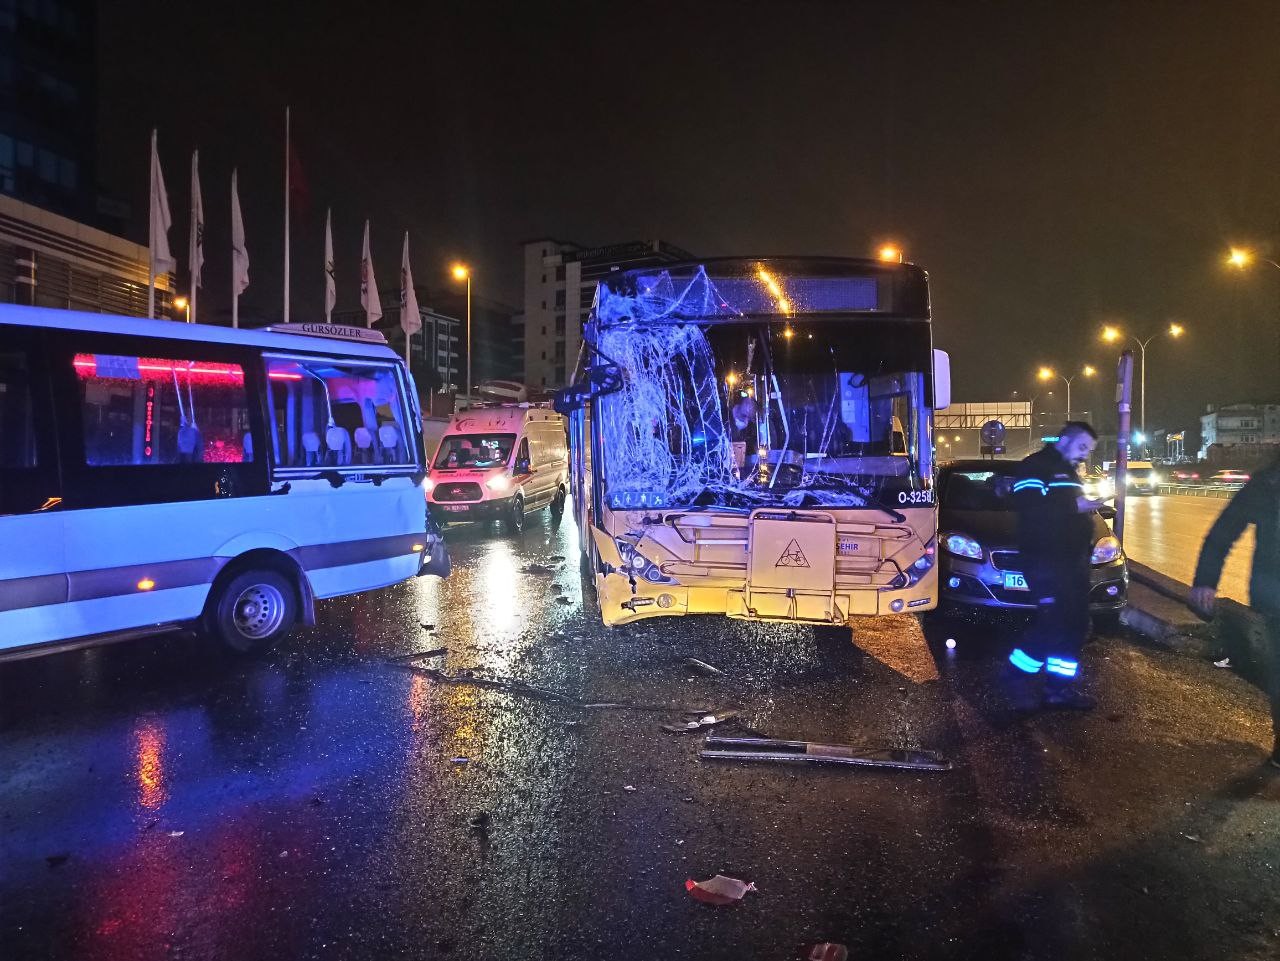 Maltepe’de sürücüsünün direksiyon hakimiyetini kaybettiği İETT otobüsü, durakta bekleyen yolcu minibüsüne çarptı. Kazada minibüste bulunan 5 ...